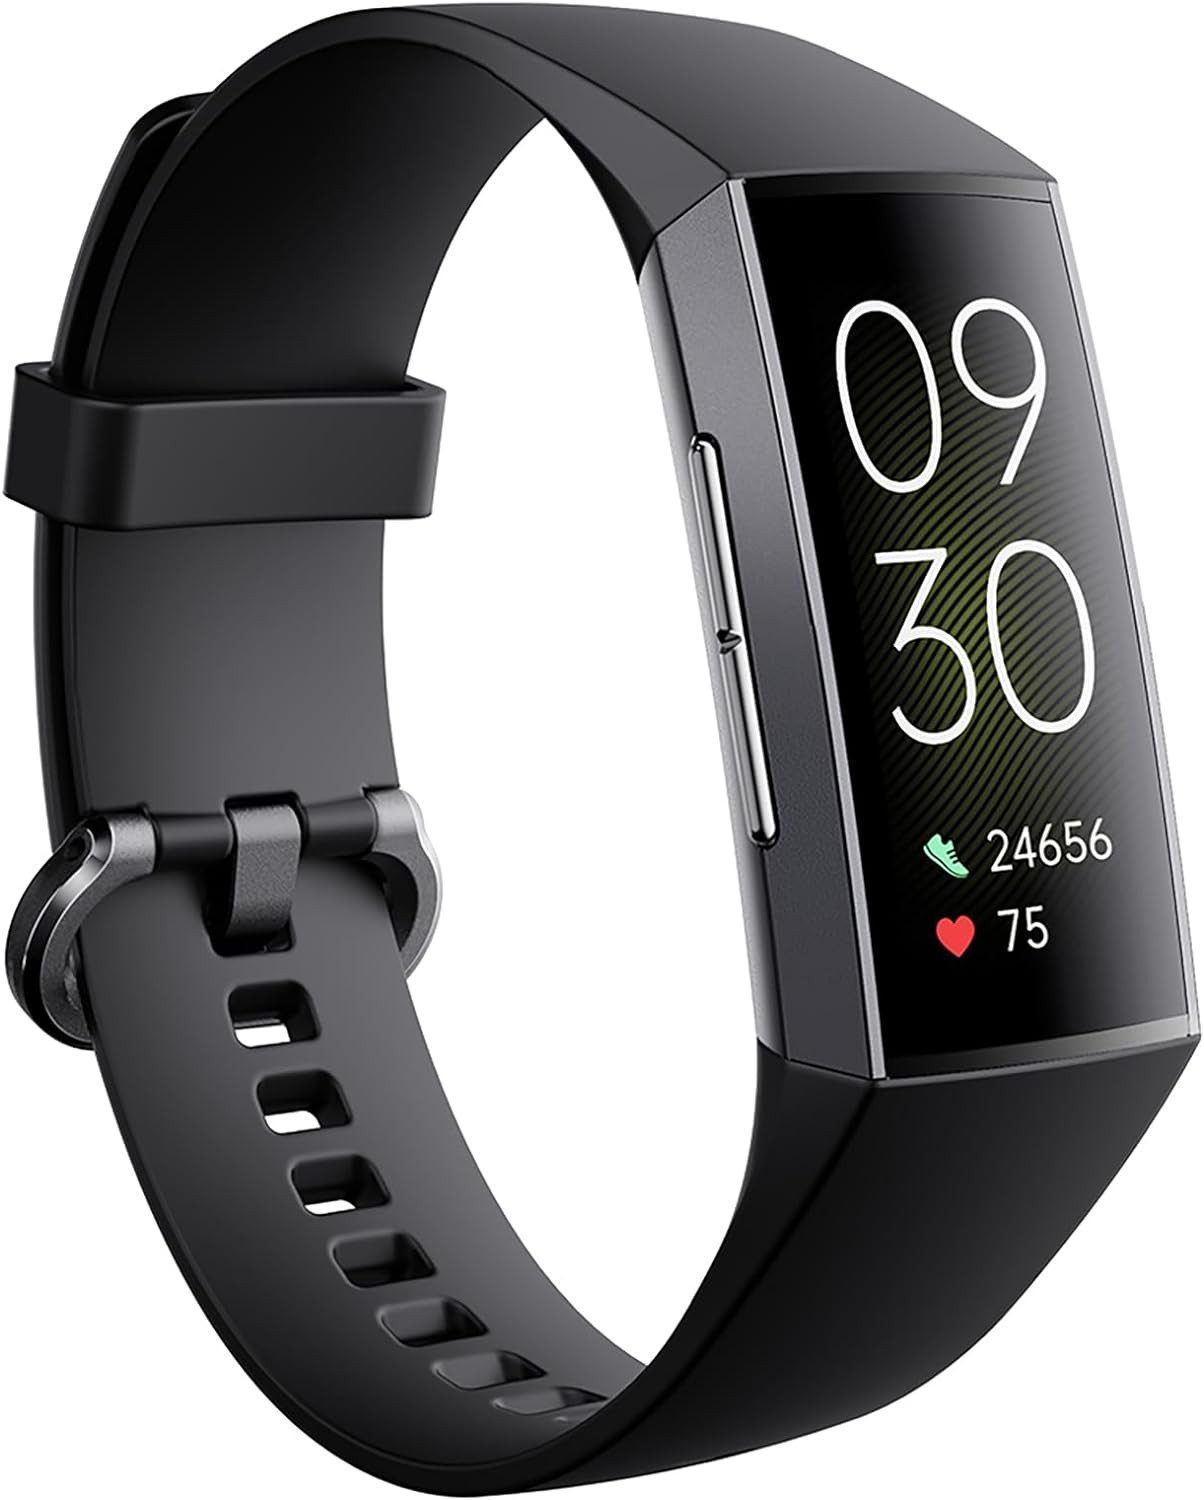 SANZEN für Frauen Männer Bildschirm Fitness Smartwatch (1.1 Zoll, Android iOS), mit Herzfrequenz Blutdruck Schlaf Monitor Kalorien Tracking Schritt